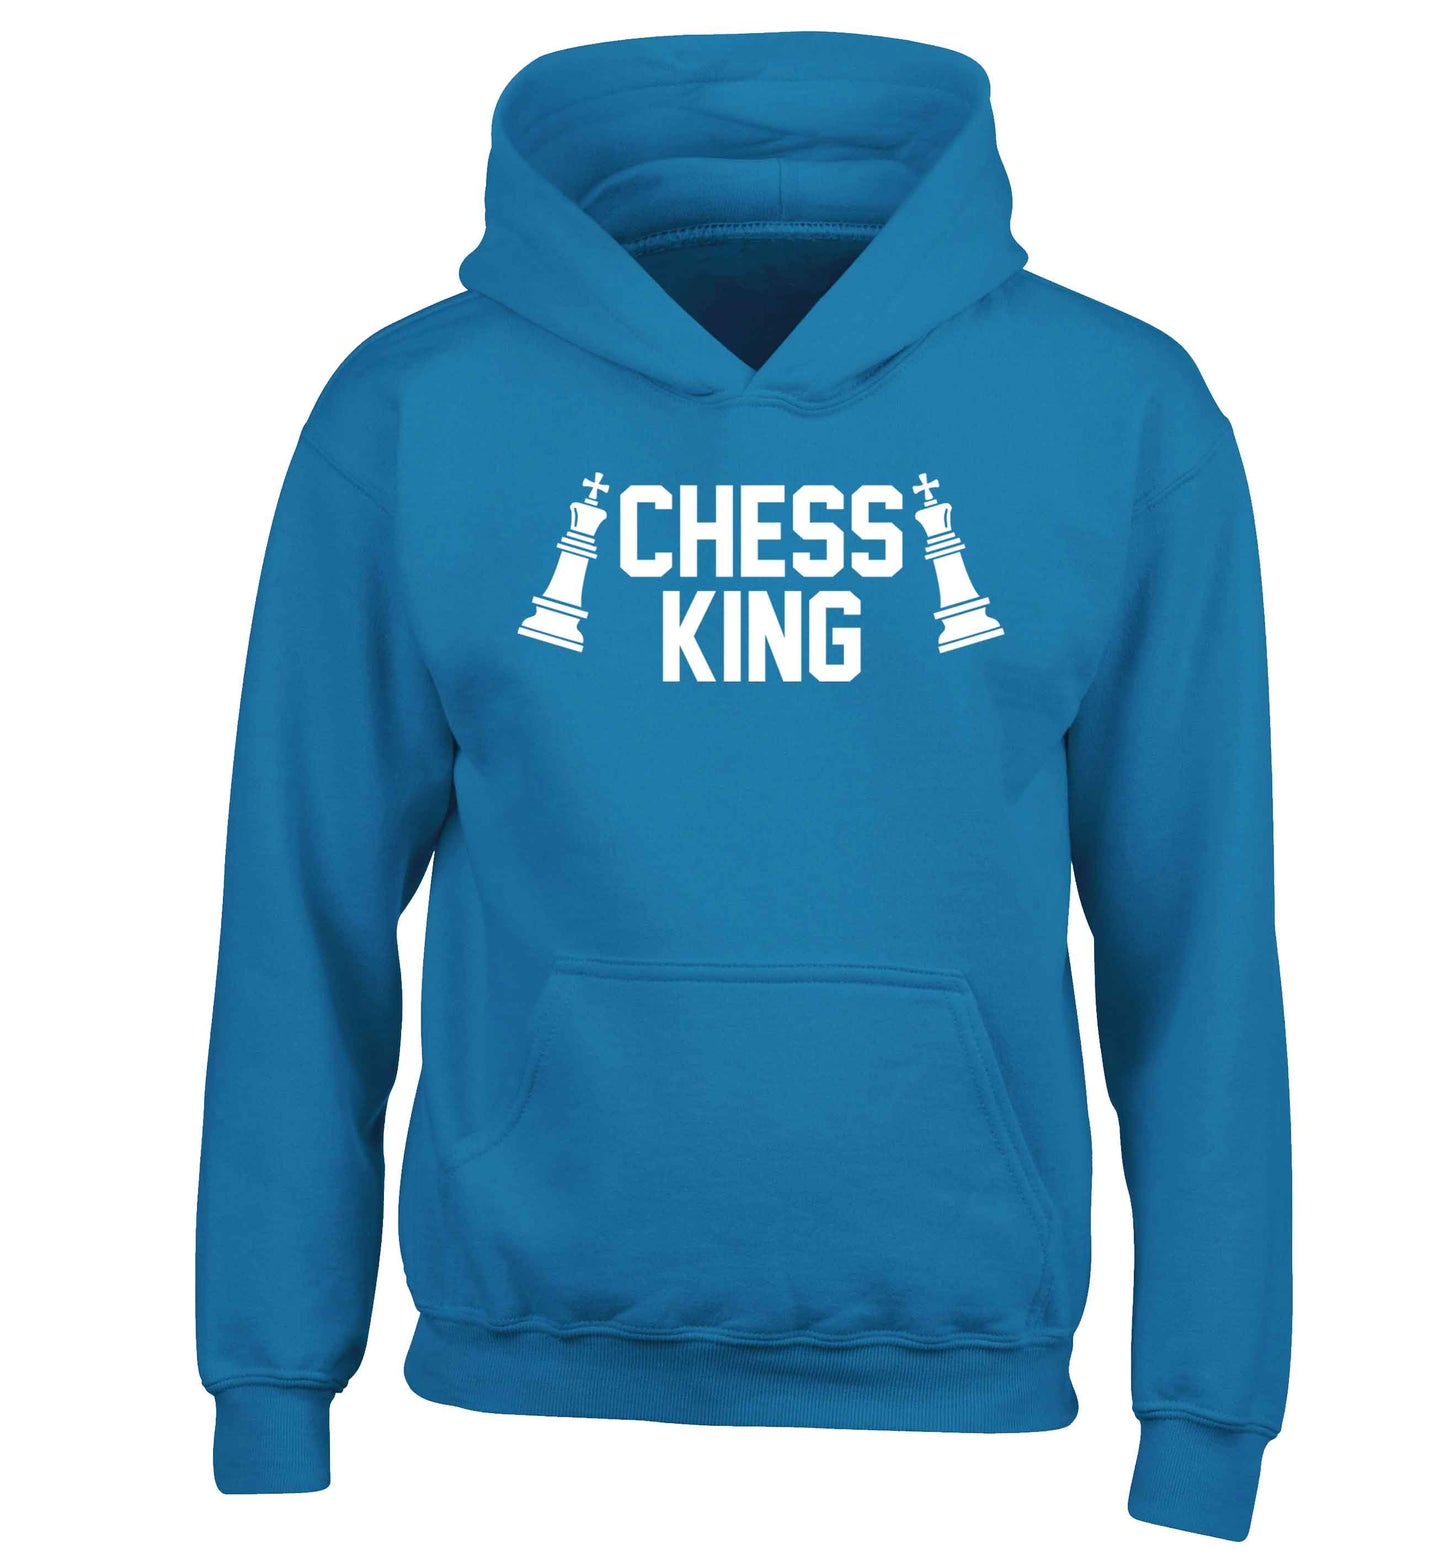 Chess king children's blue hoodie 12-13 Years